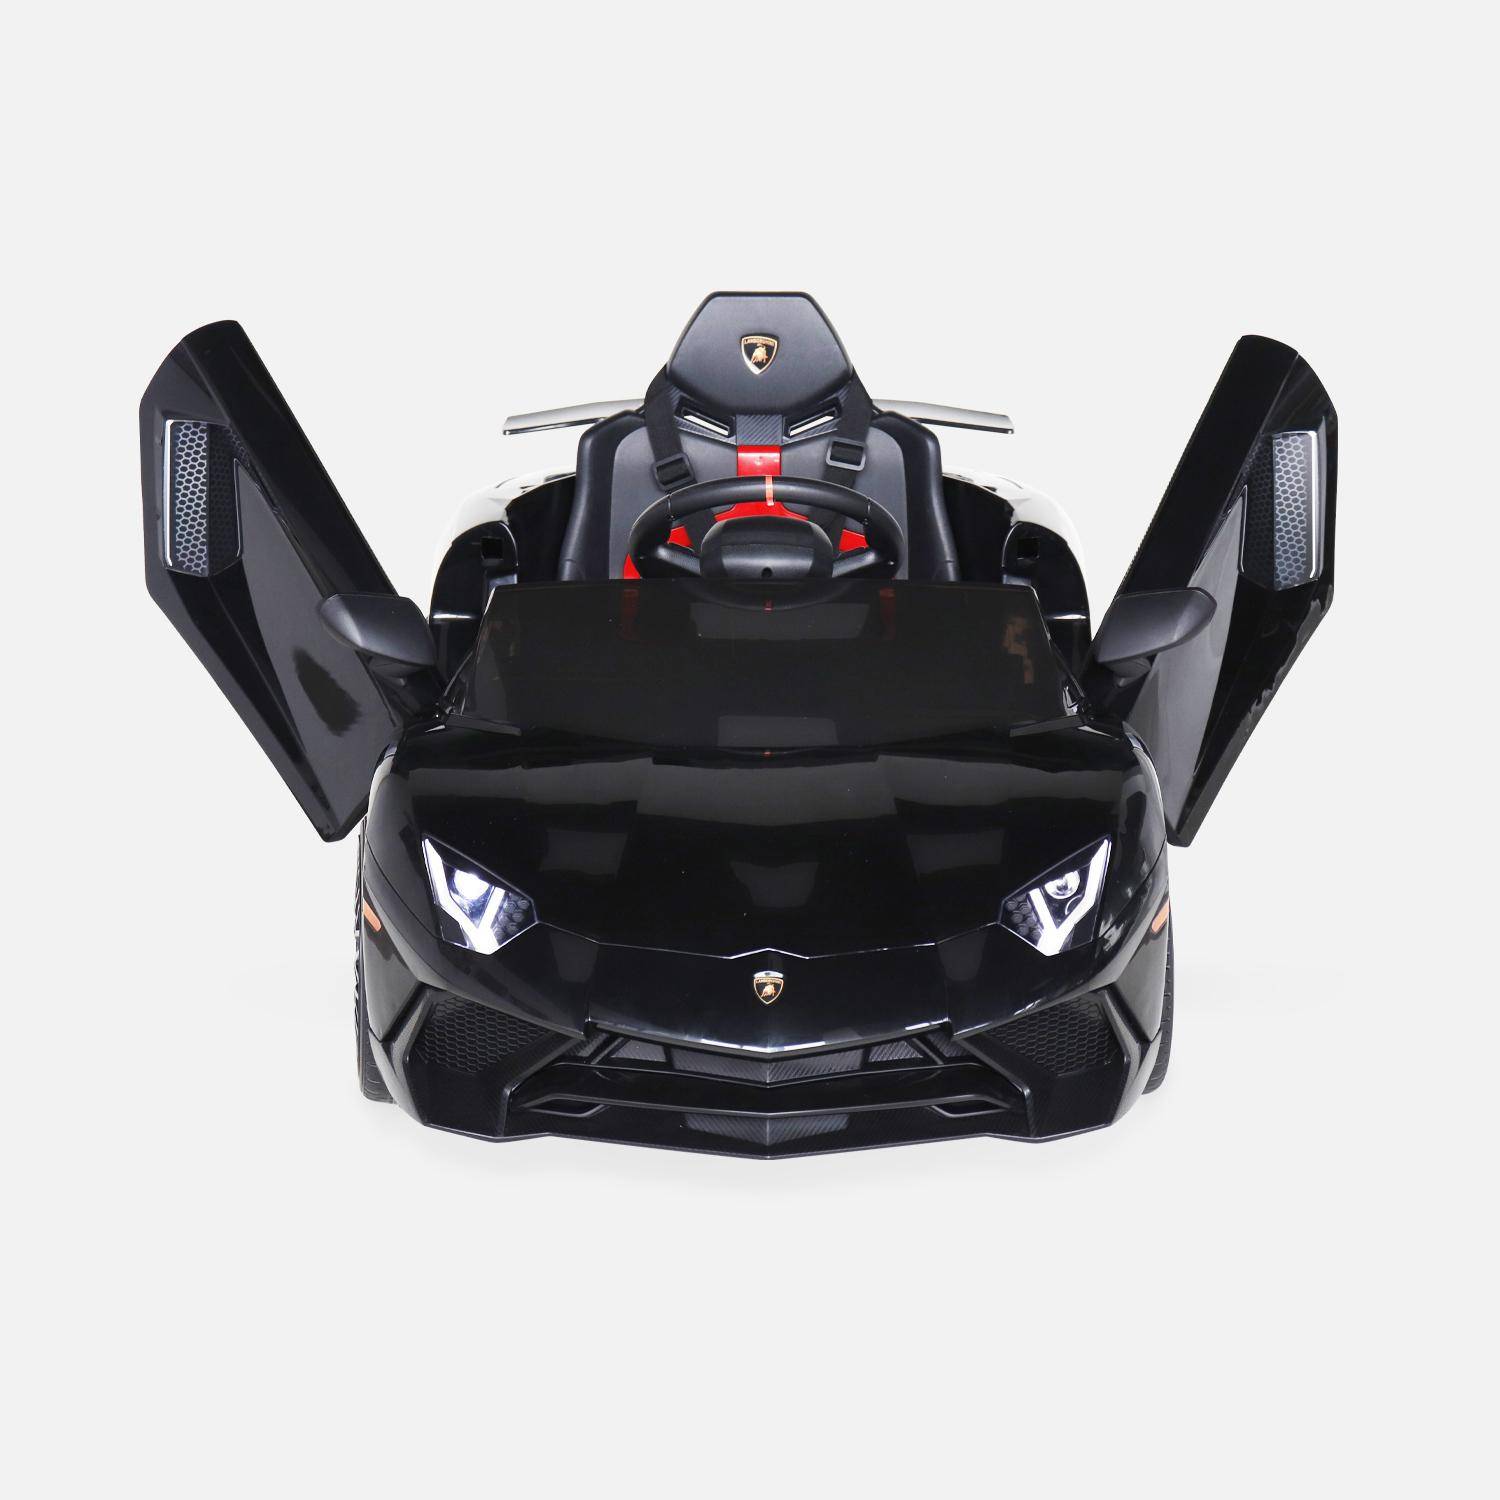 12V Elektroauto für Kinder Lamborghini, schwarz, 1 Sitzer, mit Autoradio, Fernbedienung, MP3, USB-Anschluss und funktionierenden Scheinwerfern Photo6